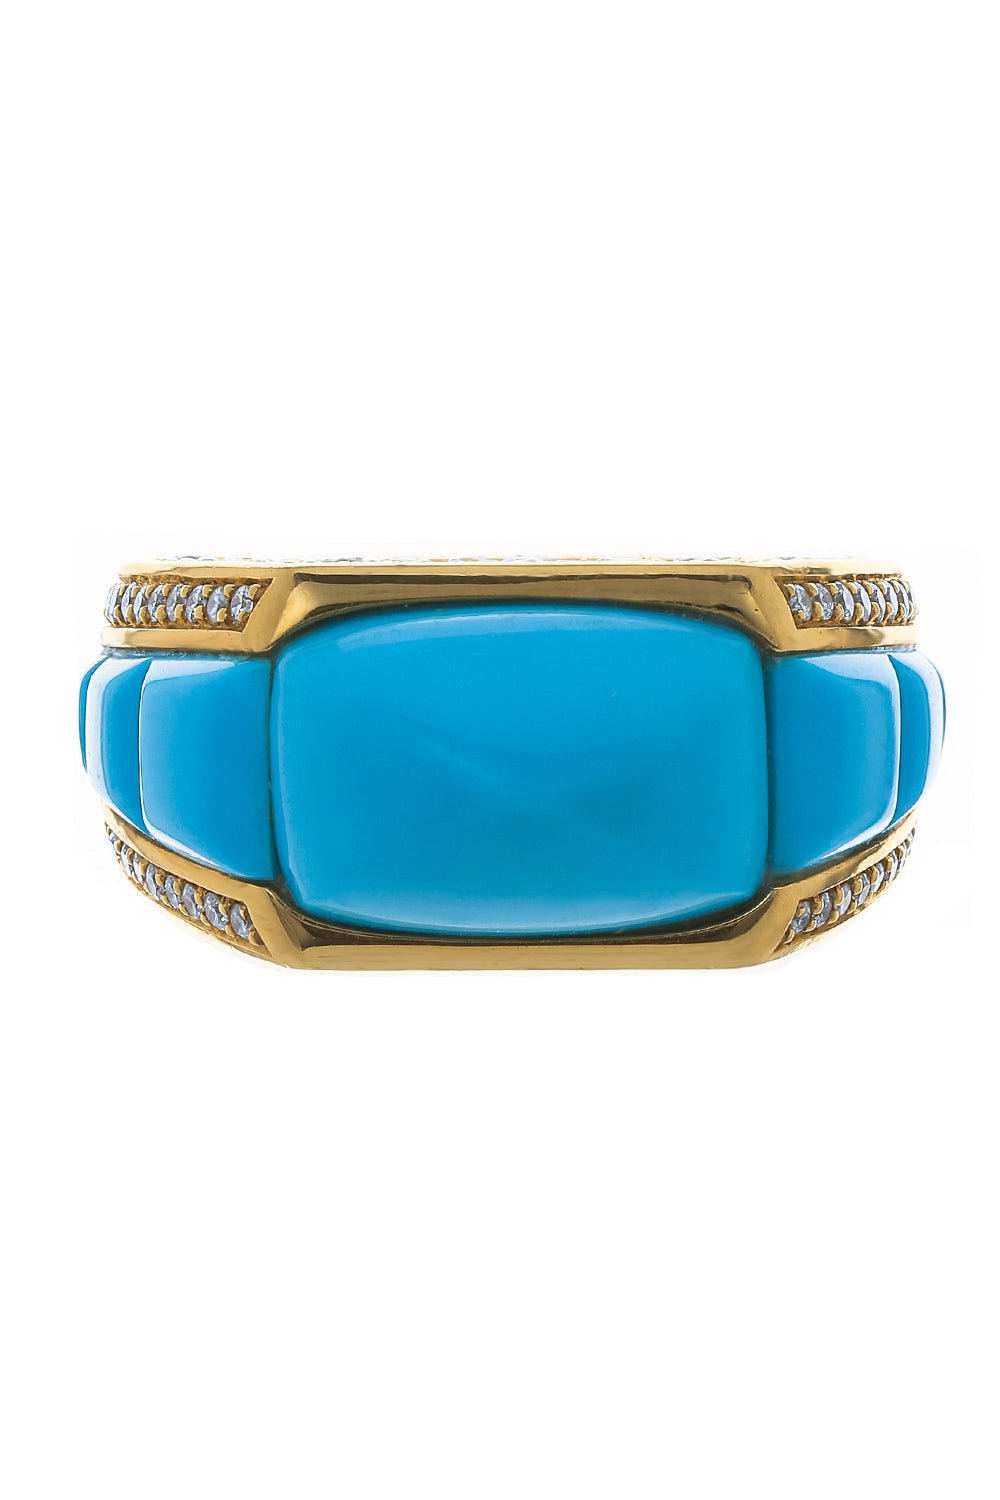 PIRANESI-Sugarloaf Turquoise Ring-YELLOW GOLD